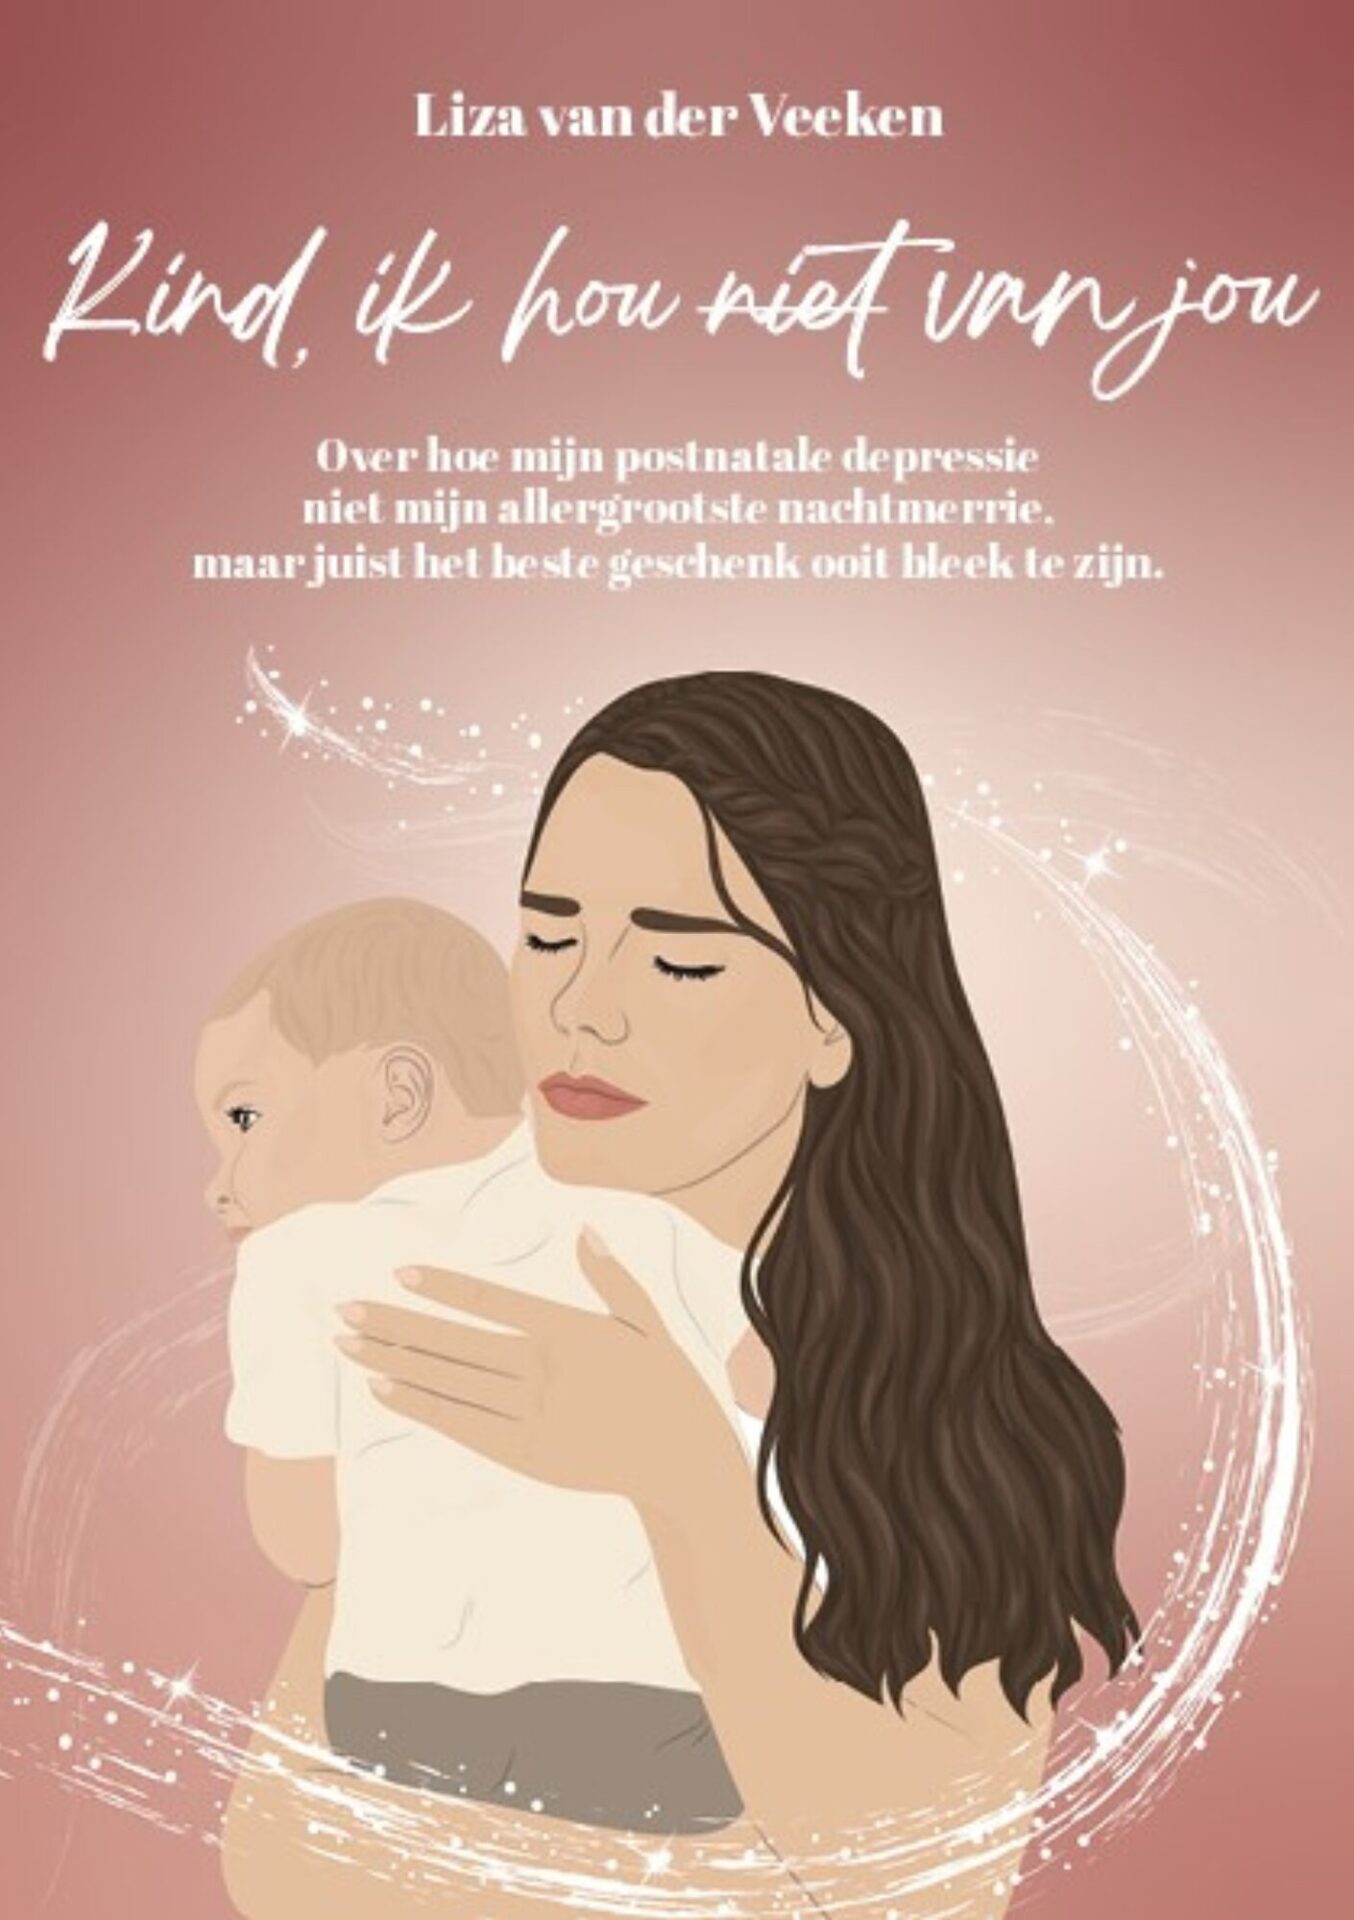 Liza haar boek 'Kind ik hou (niet) van jou' over haar ervaring met postnatale depressie.